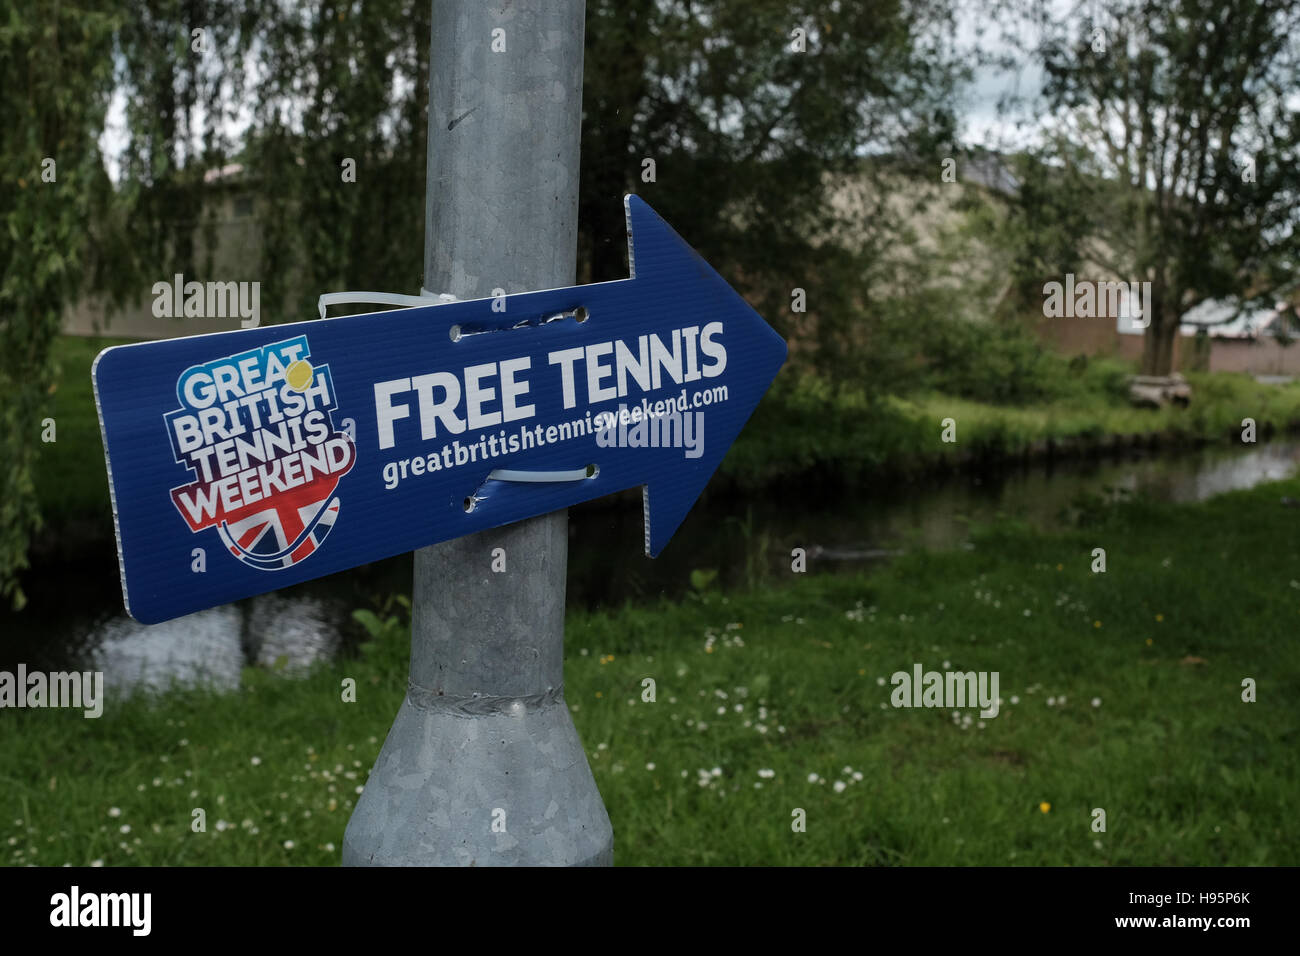 Große britische Tennis Wochenende anmelden Förderung freier Tennis Stockfoto